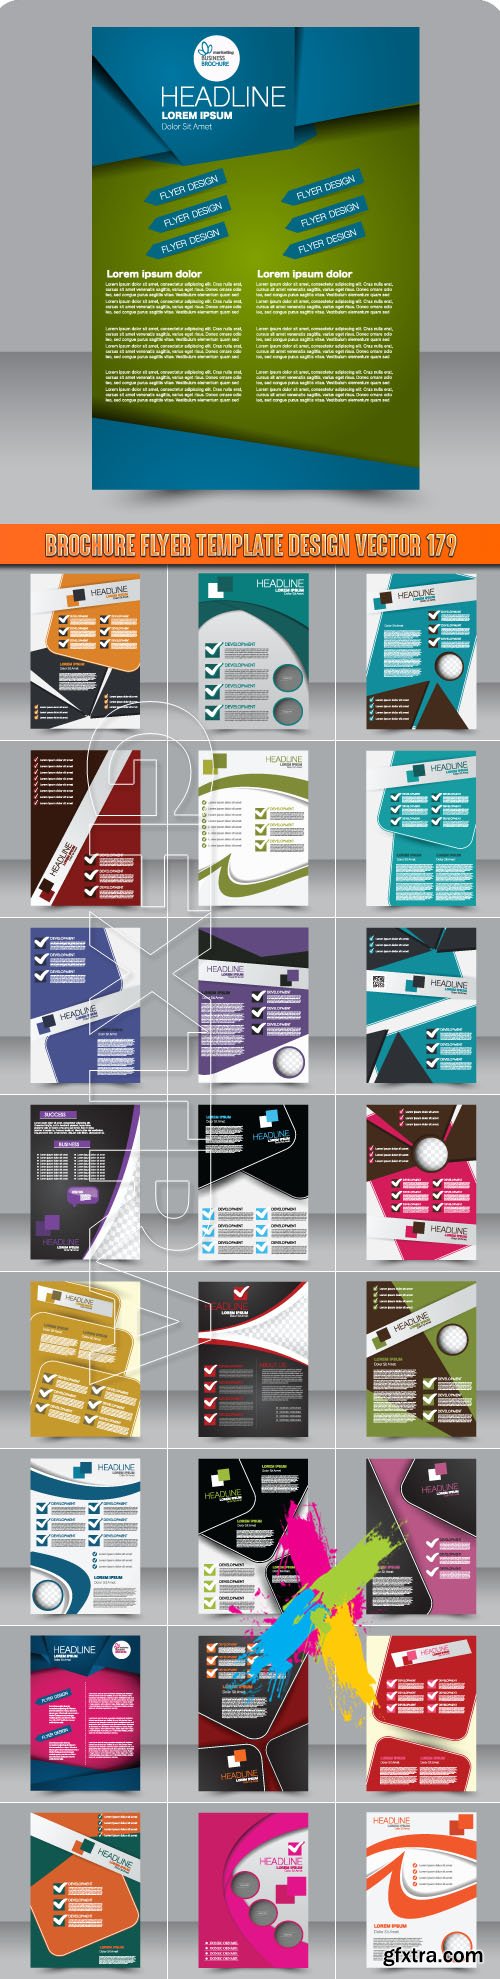 Brochure flyer template design vector 179